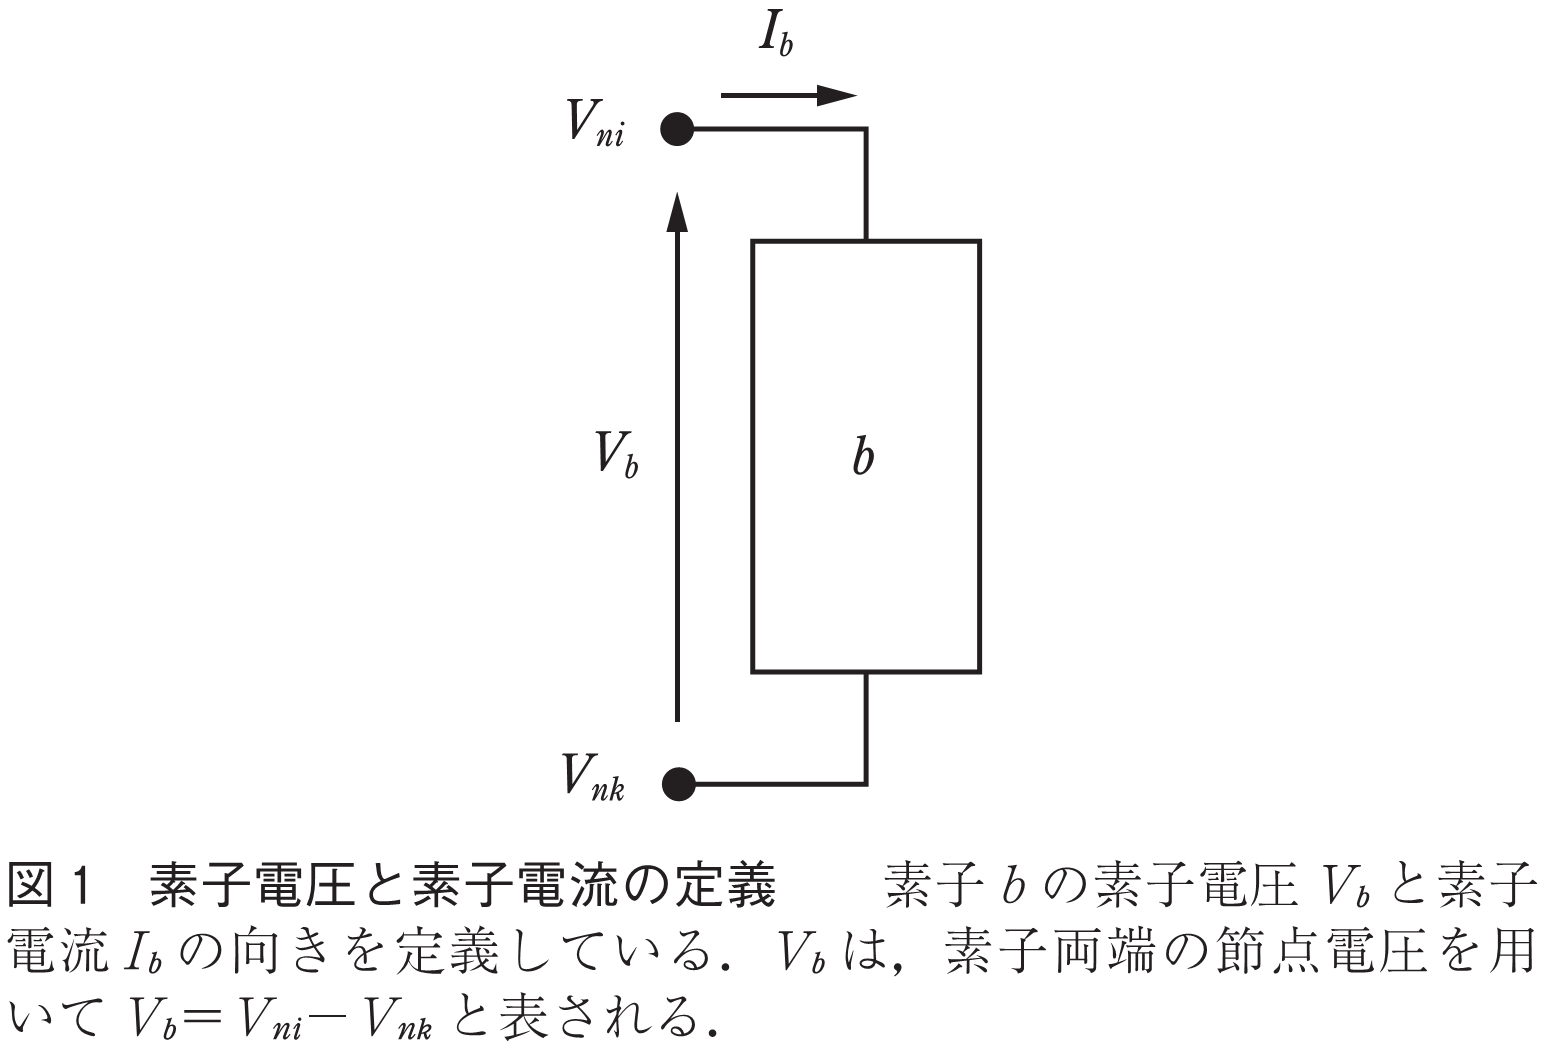 図1 素子電圧と素子電流の定義